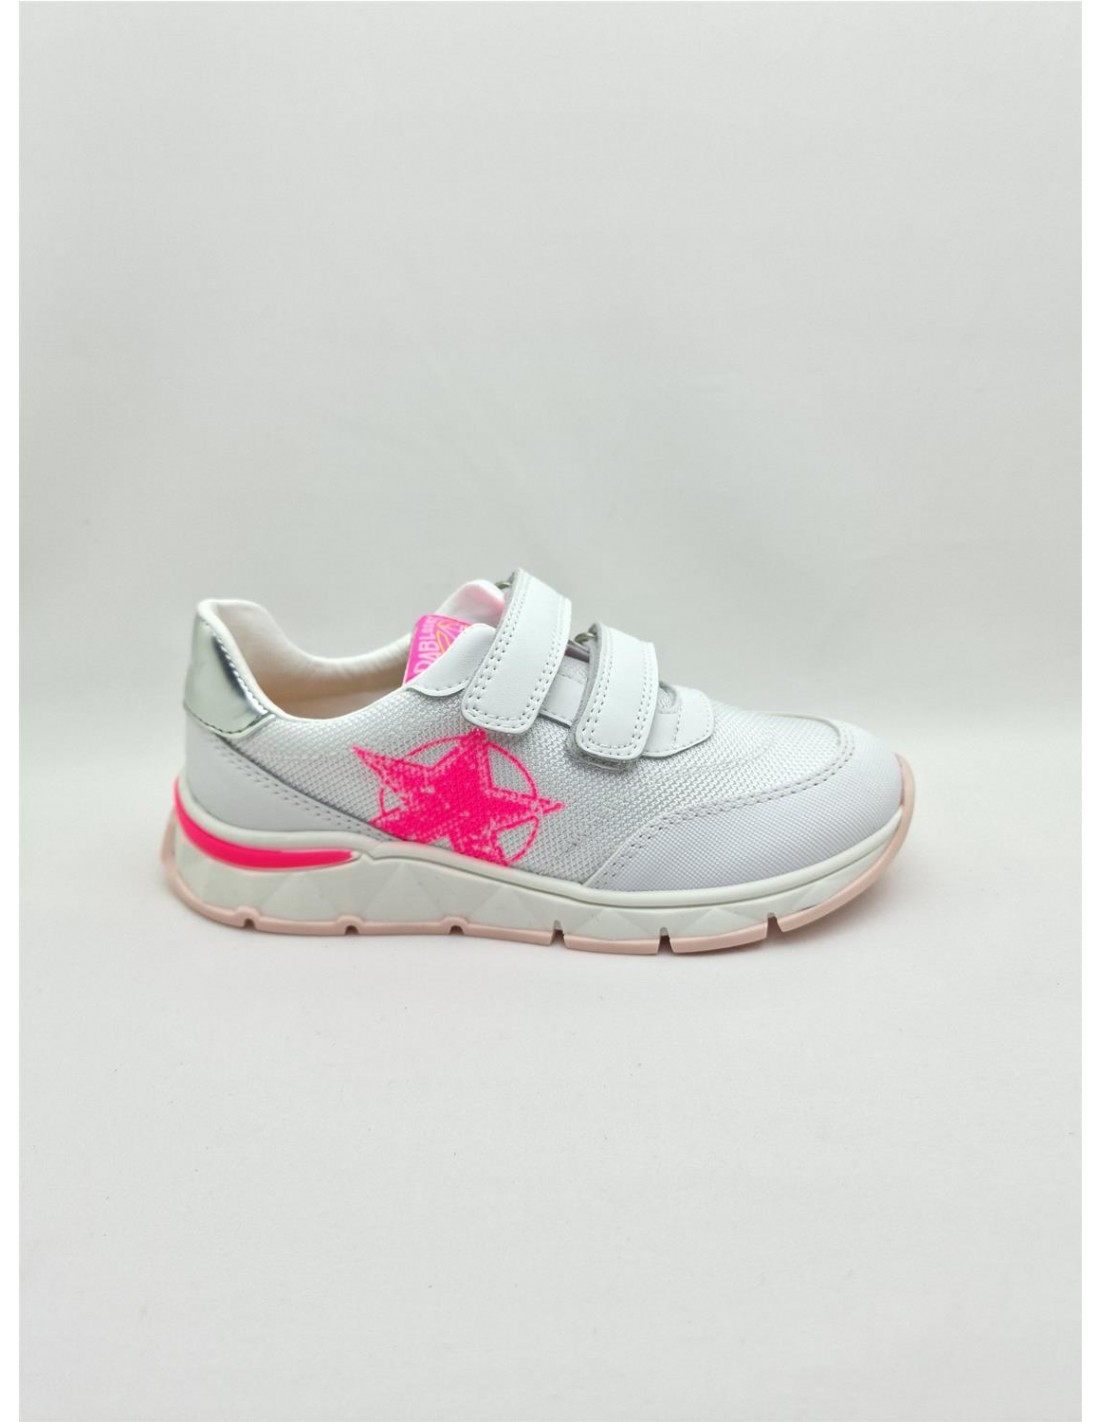 Кроссовки Pablosky для девочек, размер 29, белые с розовым принтом, 298707 белые кроссовки geox для девочки 36